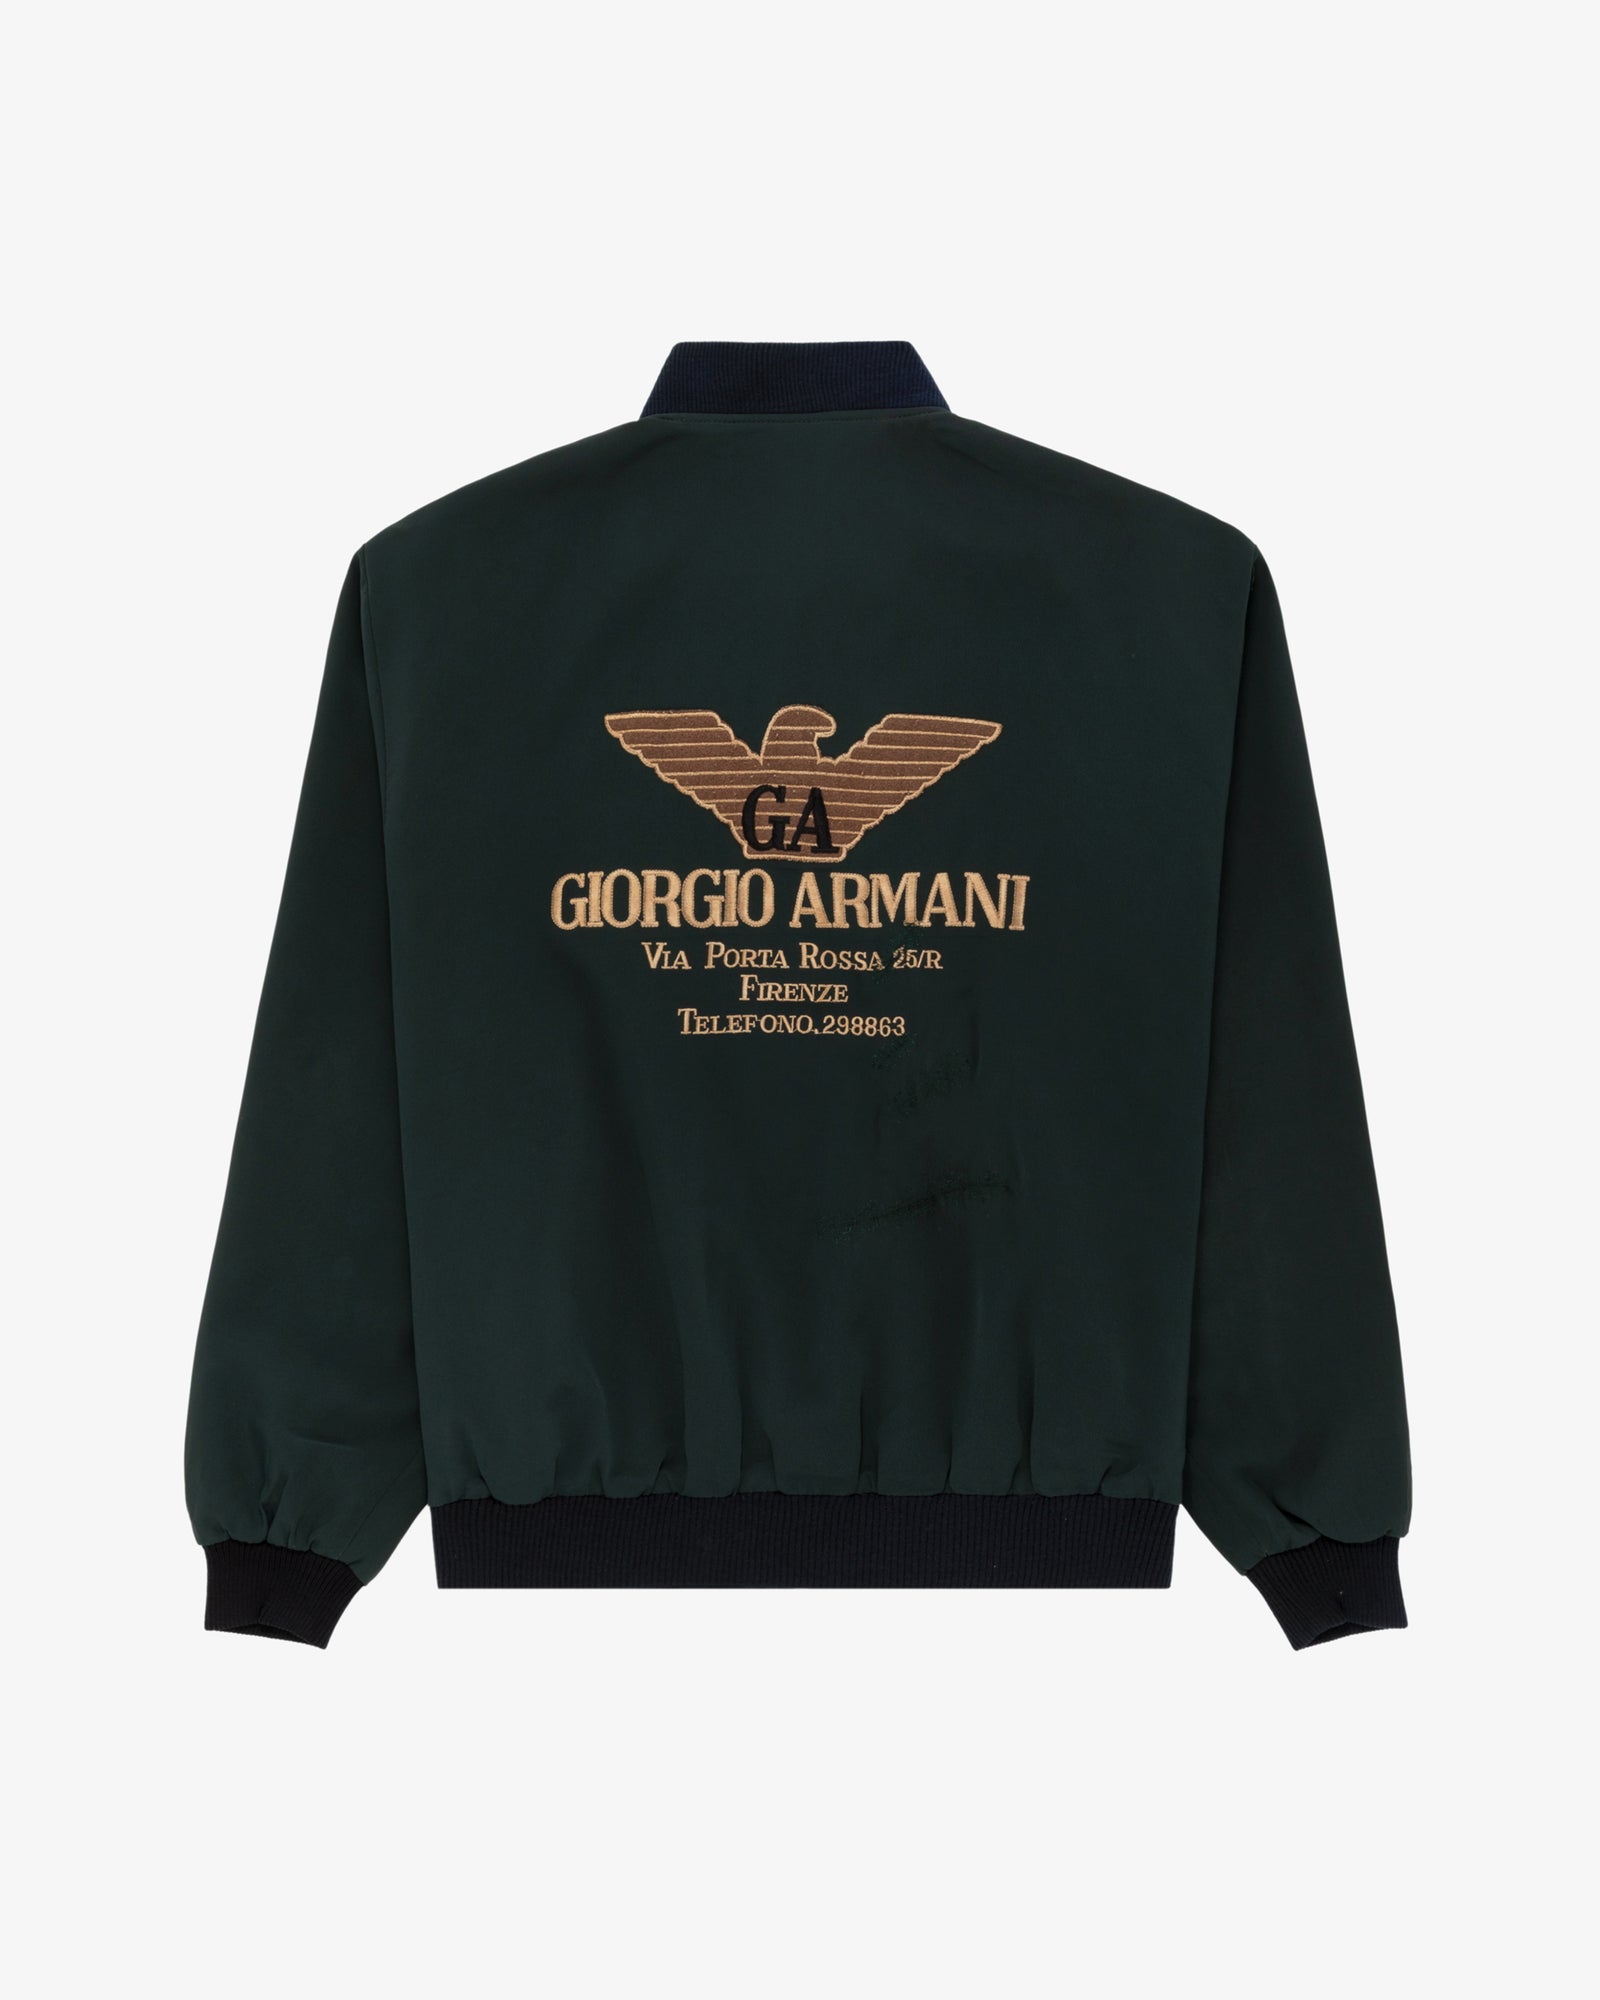 Vintage Armani Bomber Jacket